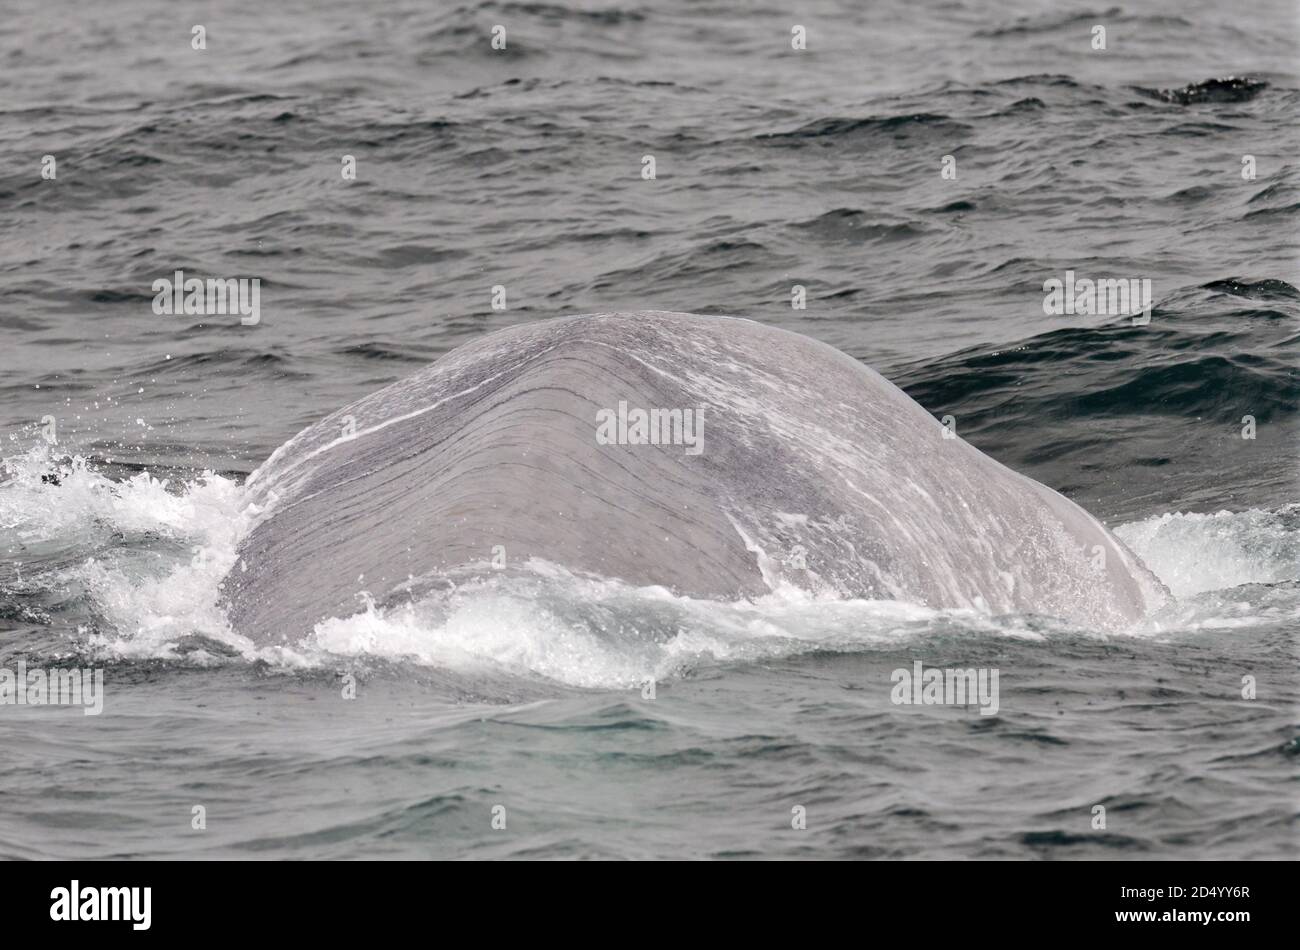 Baleine bleue (Balaenoptera musculus), plongée au large de la côte nord de l'Atlantique au large de l'Islande, montrant le dos et la nageoire dorsale, Islande Banque D'Images